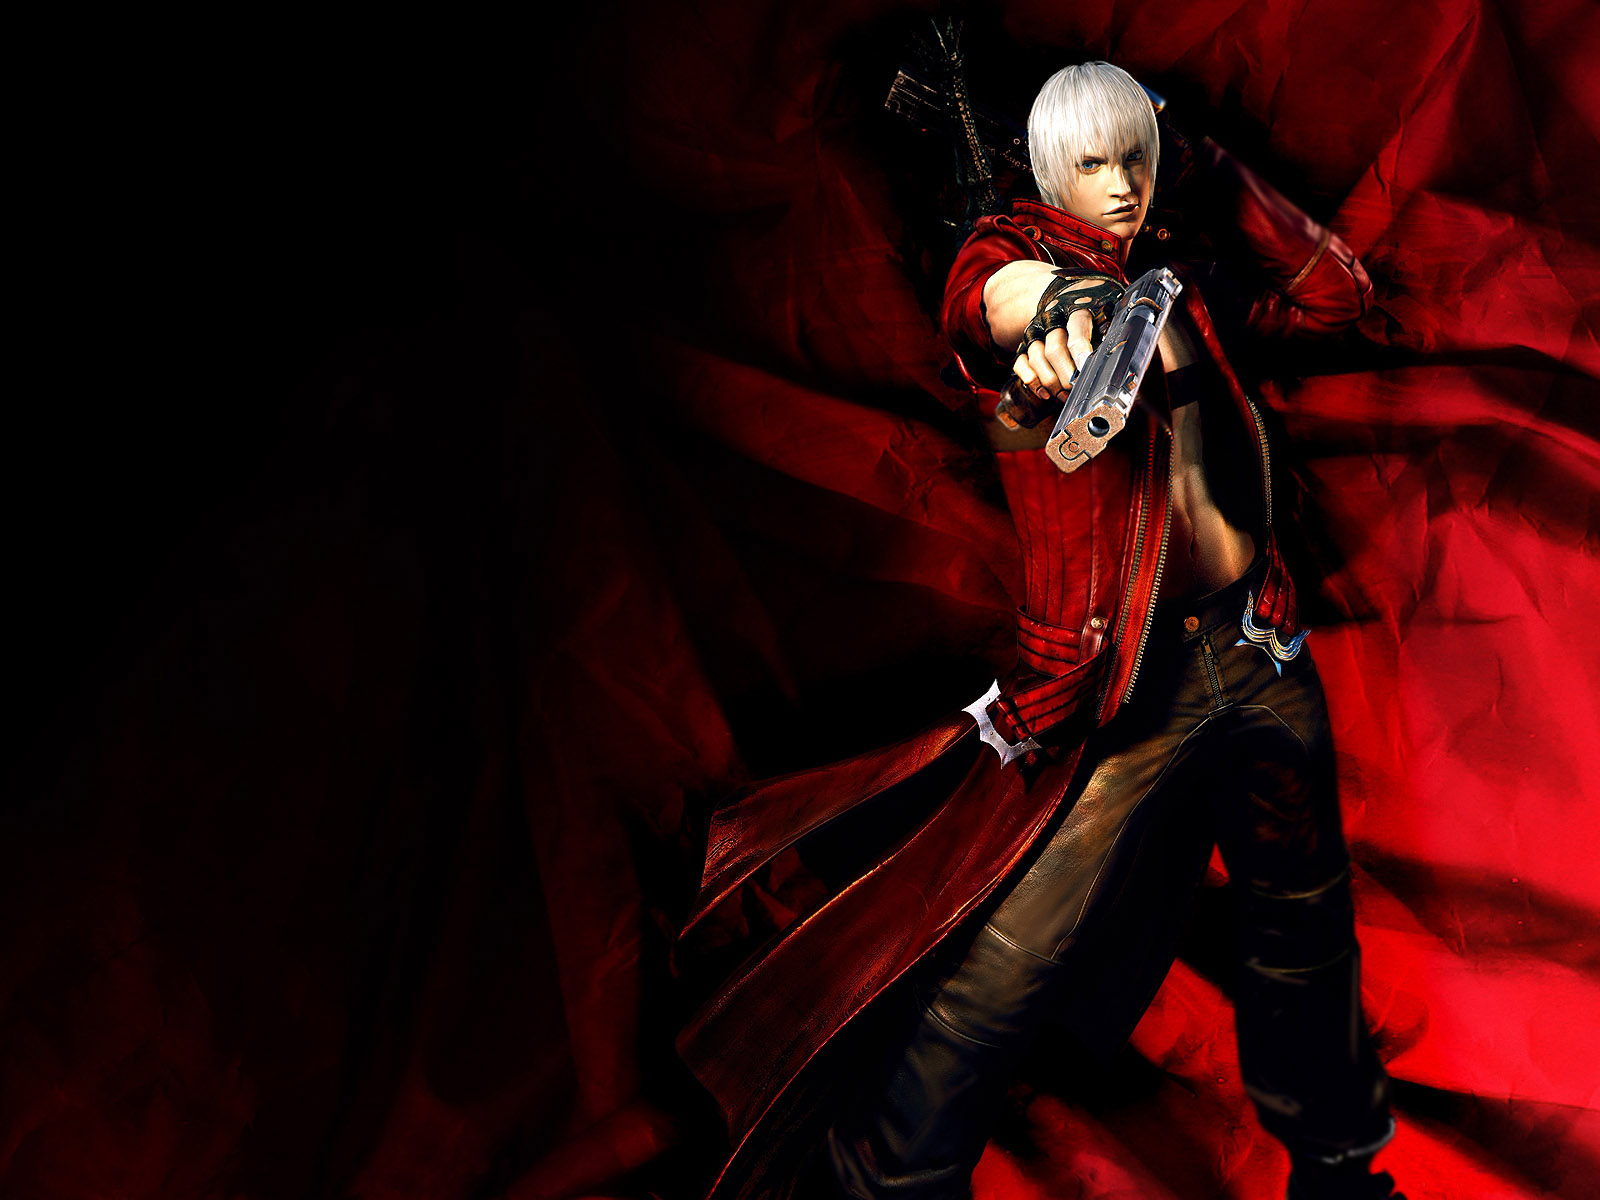 Dante from Devil May Cry in fiery battle.